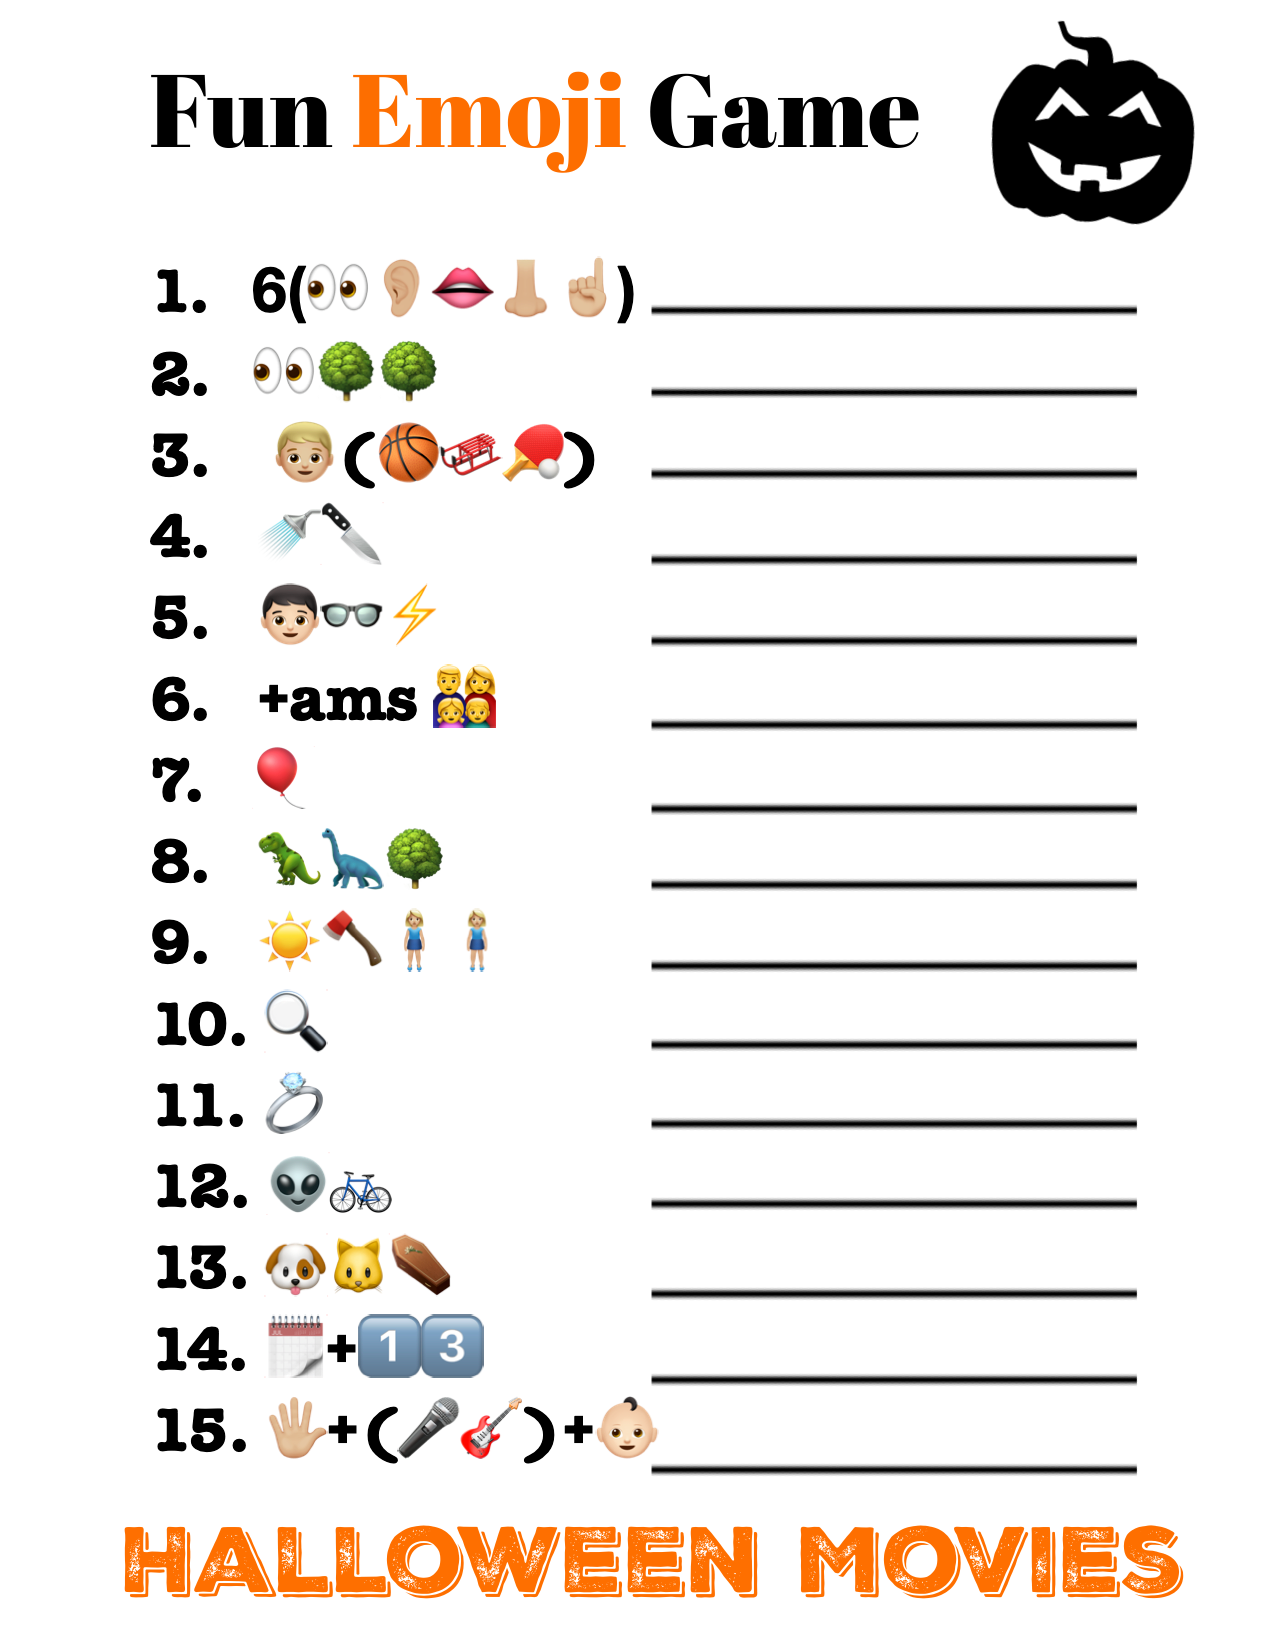 Emoji Phraseology - Back 2 School Edition